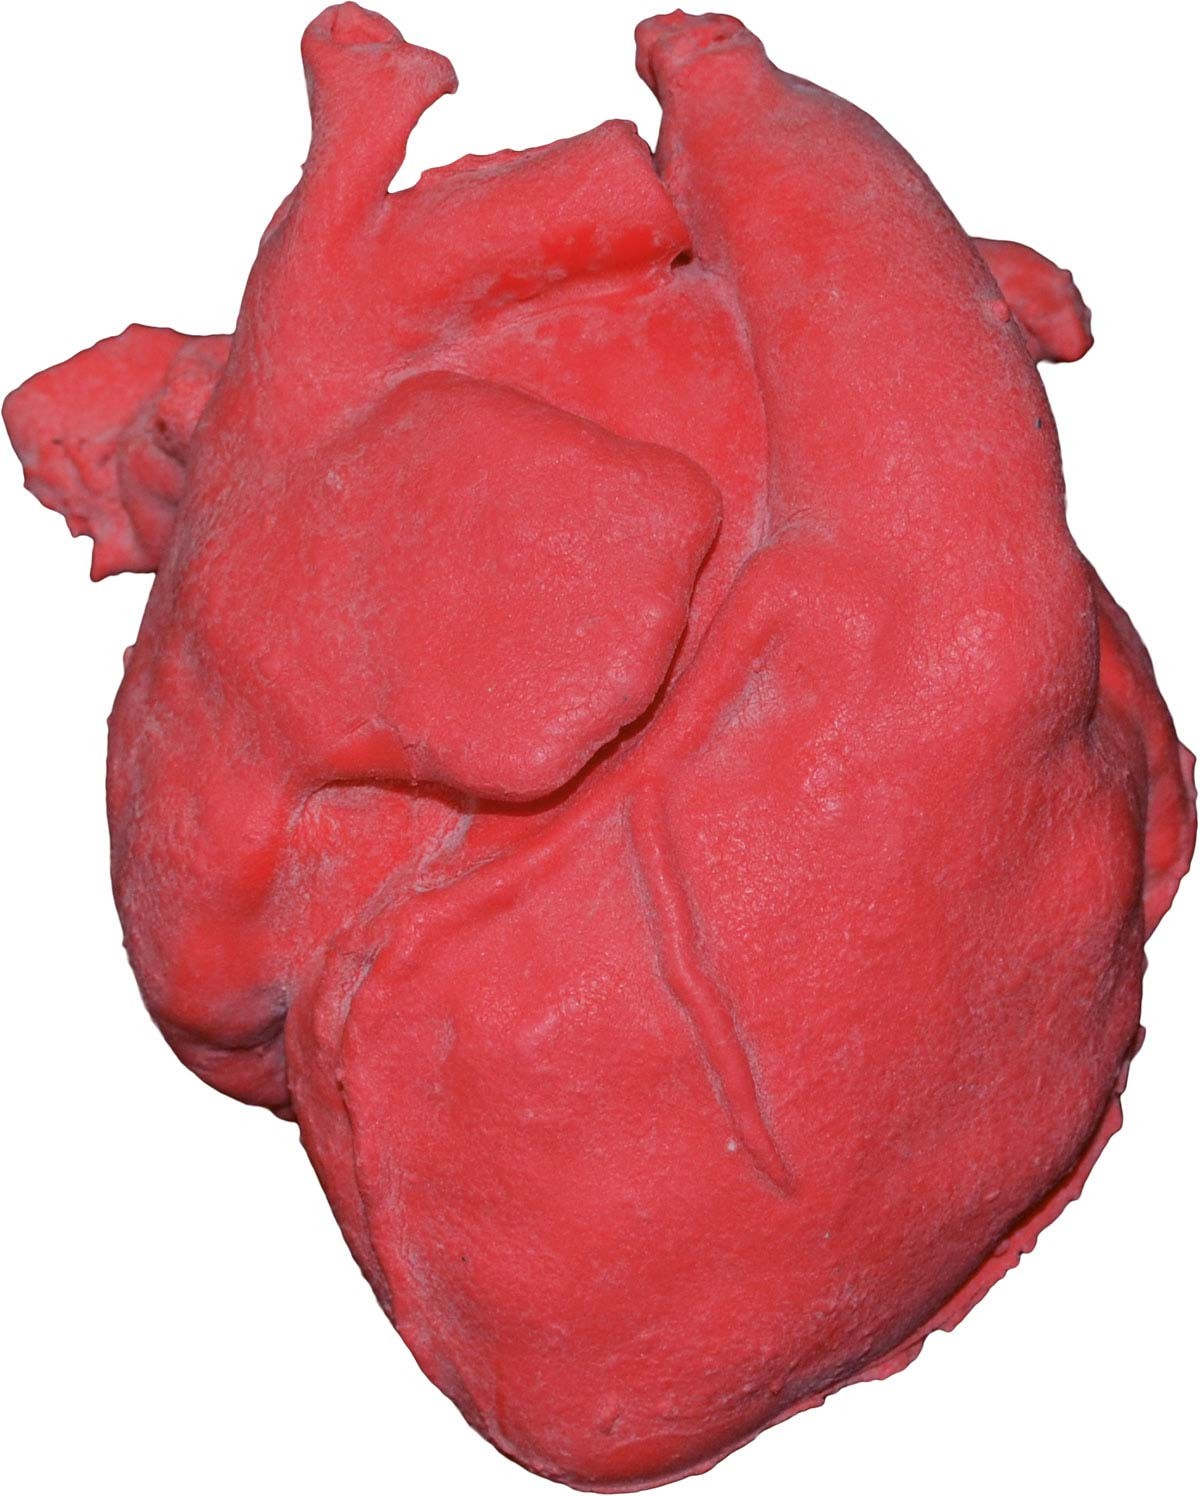 Pädiatrisches Herz mit korrigierter Transposition der großen Arterien (TGA) und Ventrikelseptumdef 1